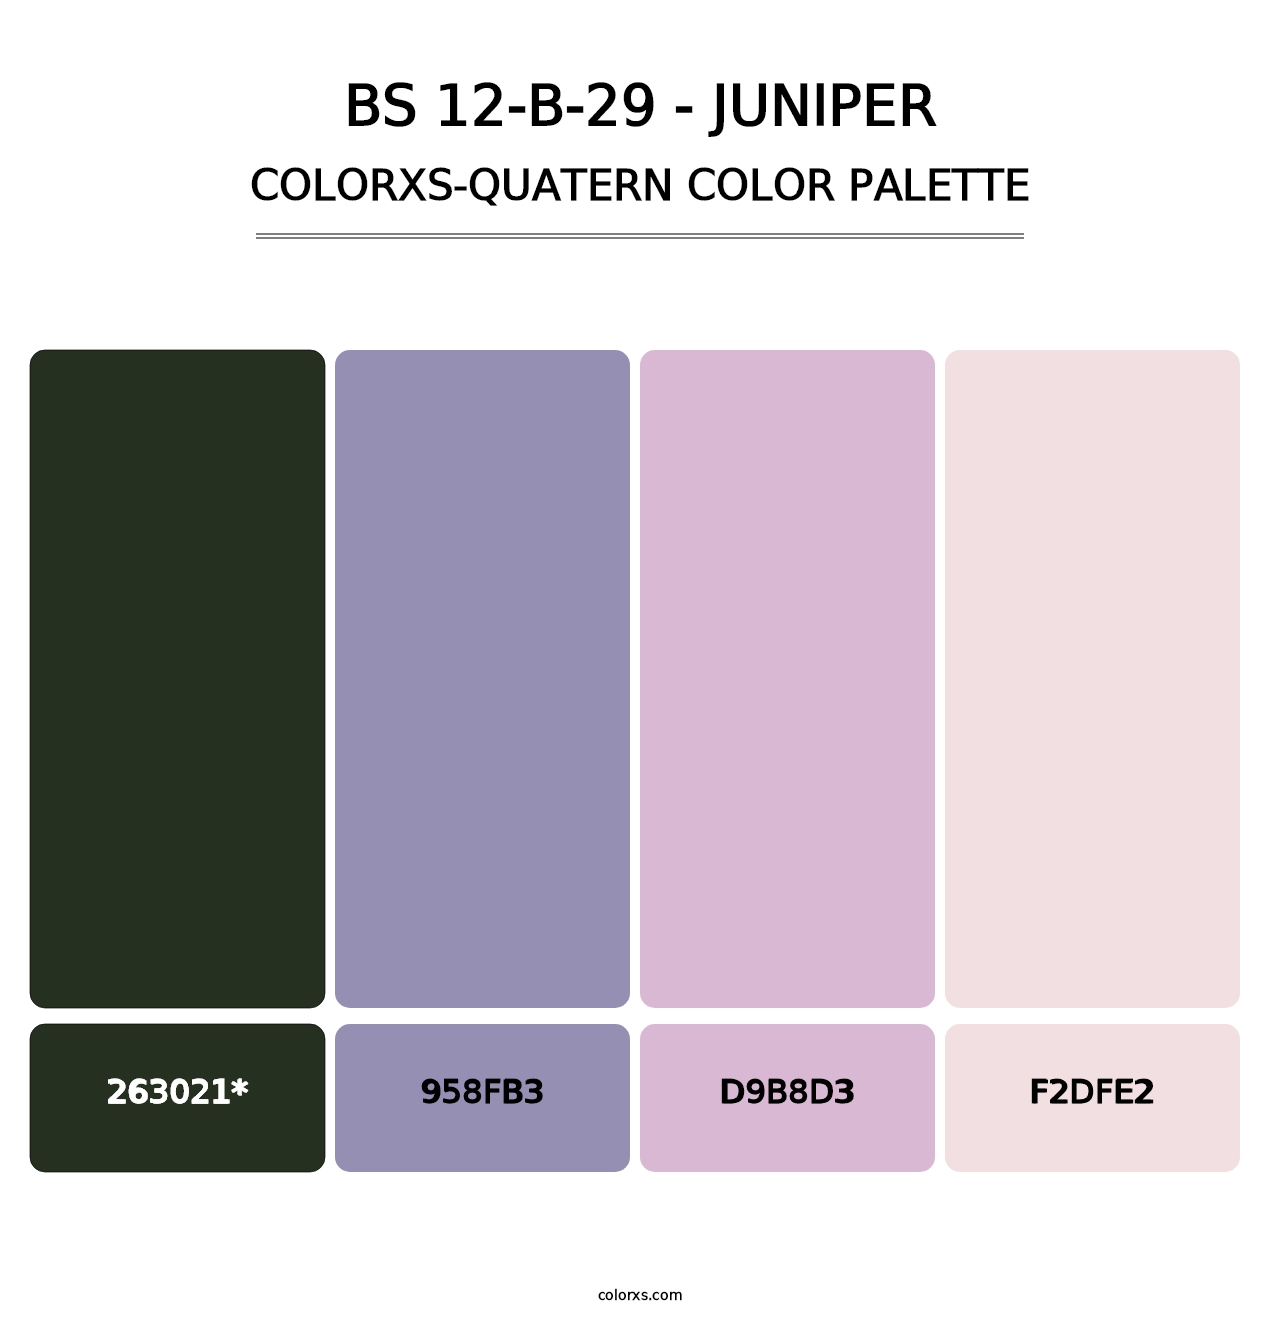 BS 12-B-29 - Juniper - Colorxs Quatern Palette